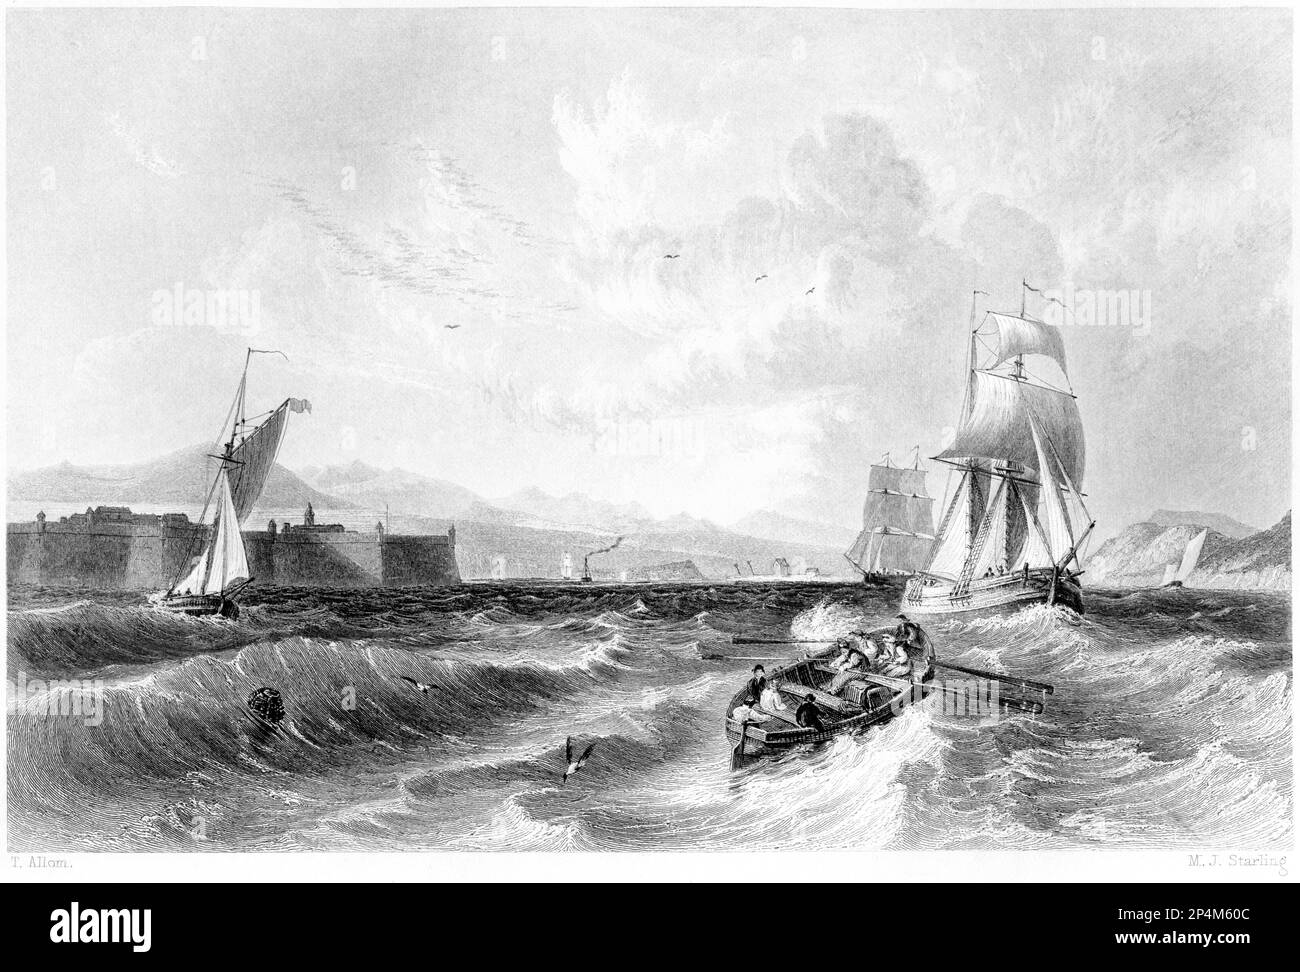 Eine Gravur des Moray Firth mit Fort George & Fort Rose, Schottland, Großbritannien, gescannt mit hoher Auflösung aus einem 1840 gedruckten Buch. Stockfoto